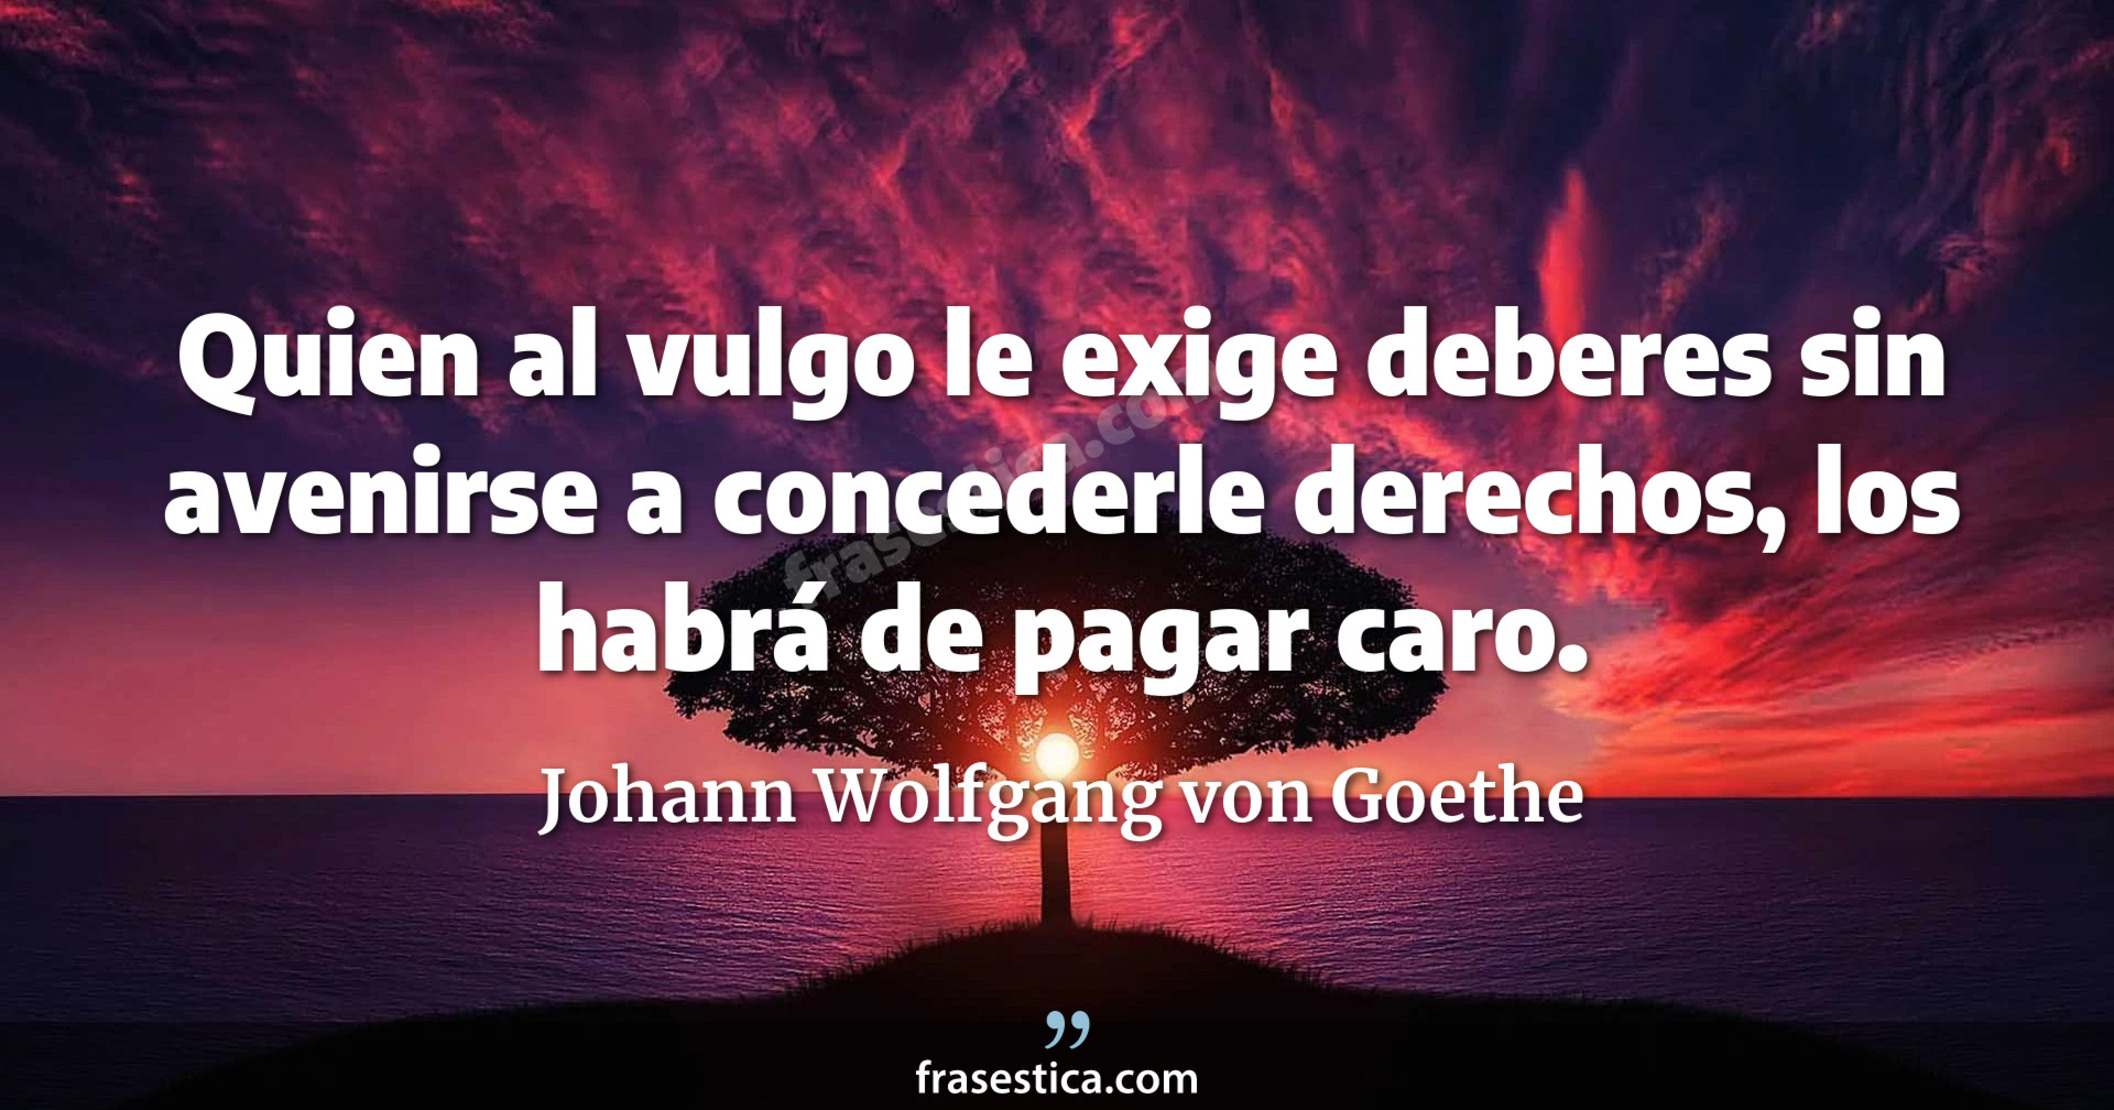 Quien al vulgo le exige deberes sin avenirse a concederle derechos, los habrá de pagar caro. - Johann Wolfgang von Goethe